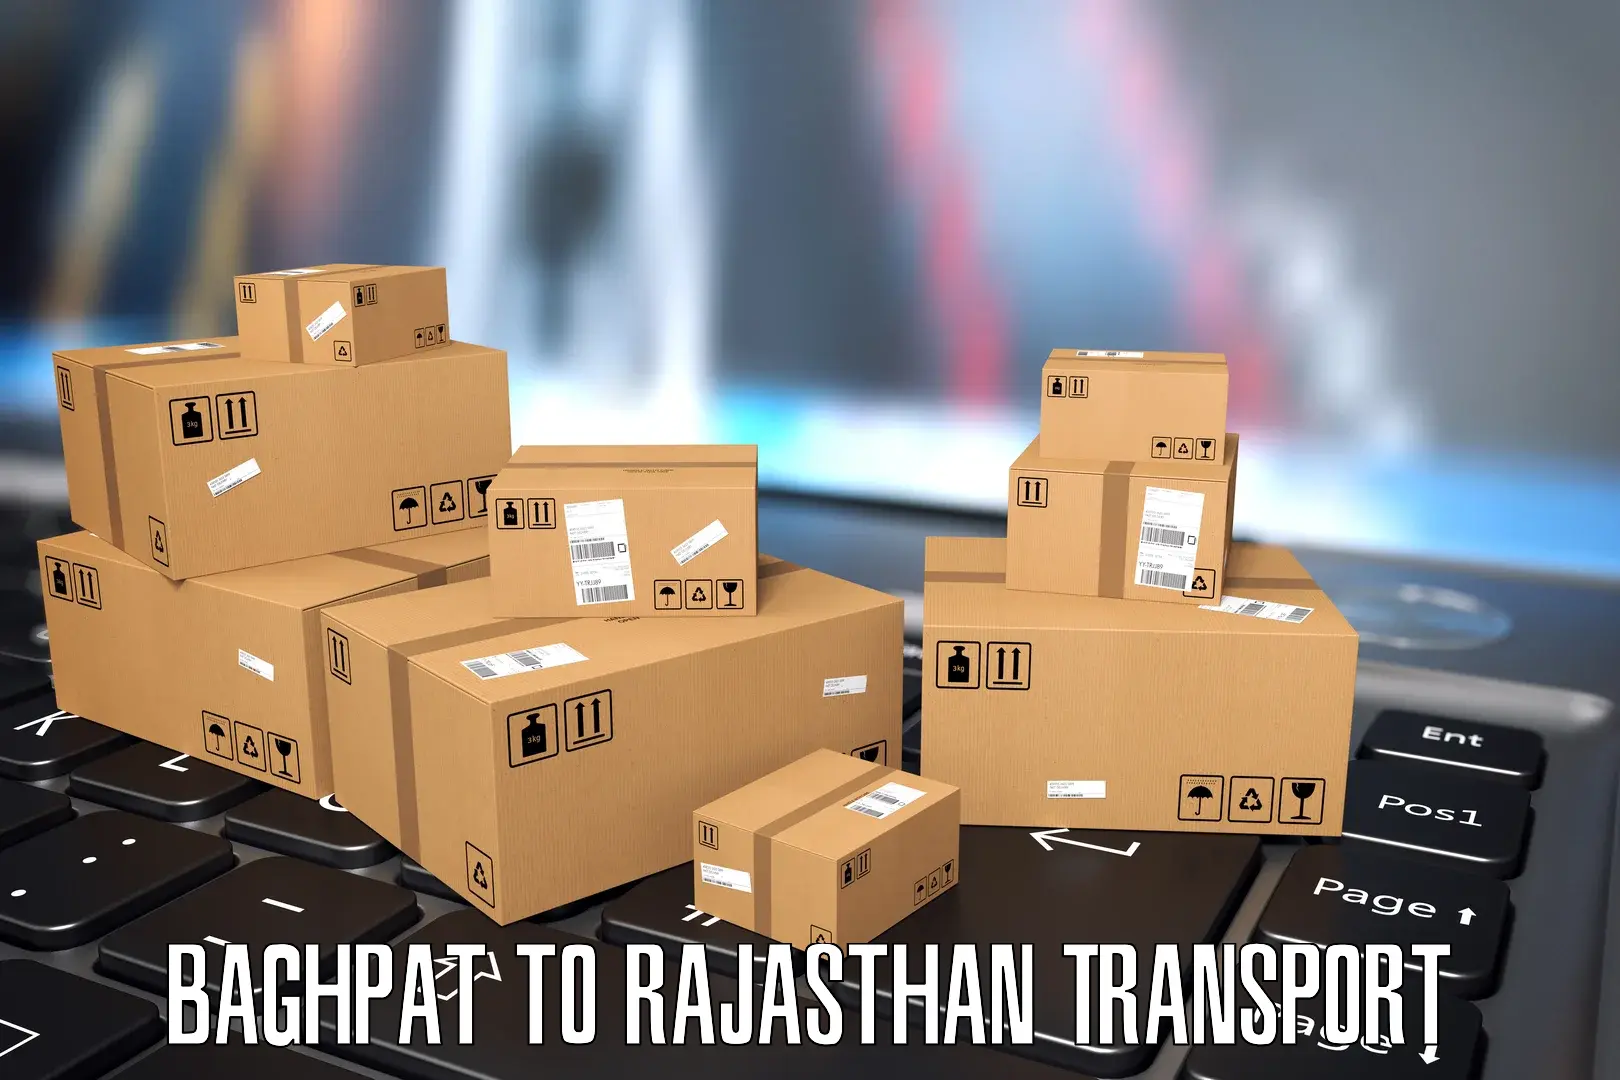 Furniture transport service Baghpat to Rajgarh Rajasthan